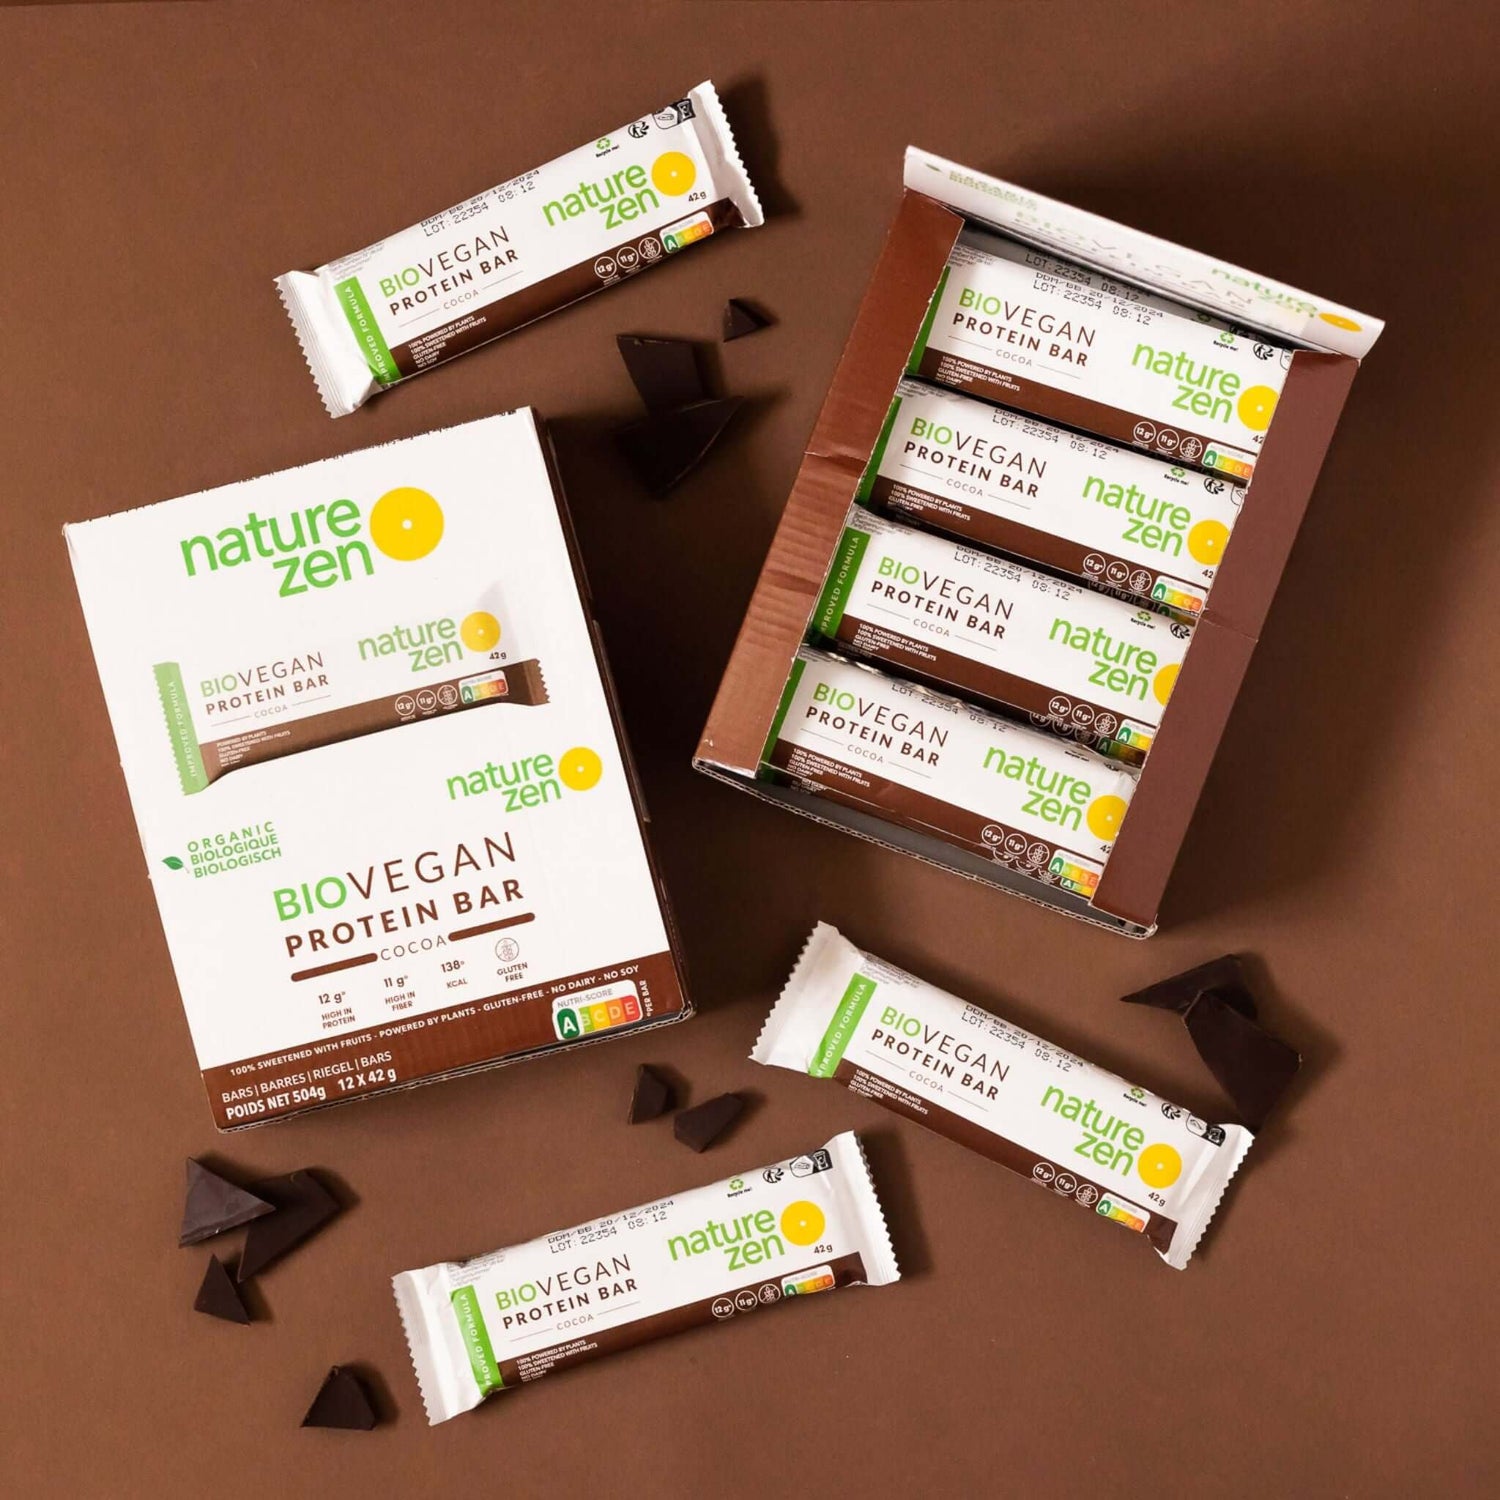 Nature Zen Organic Vegan Protein bars - Chocolate [New Recipe] bars and box